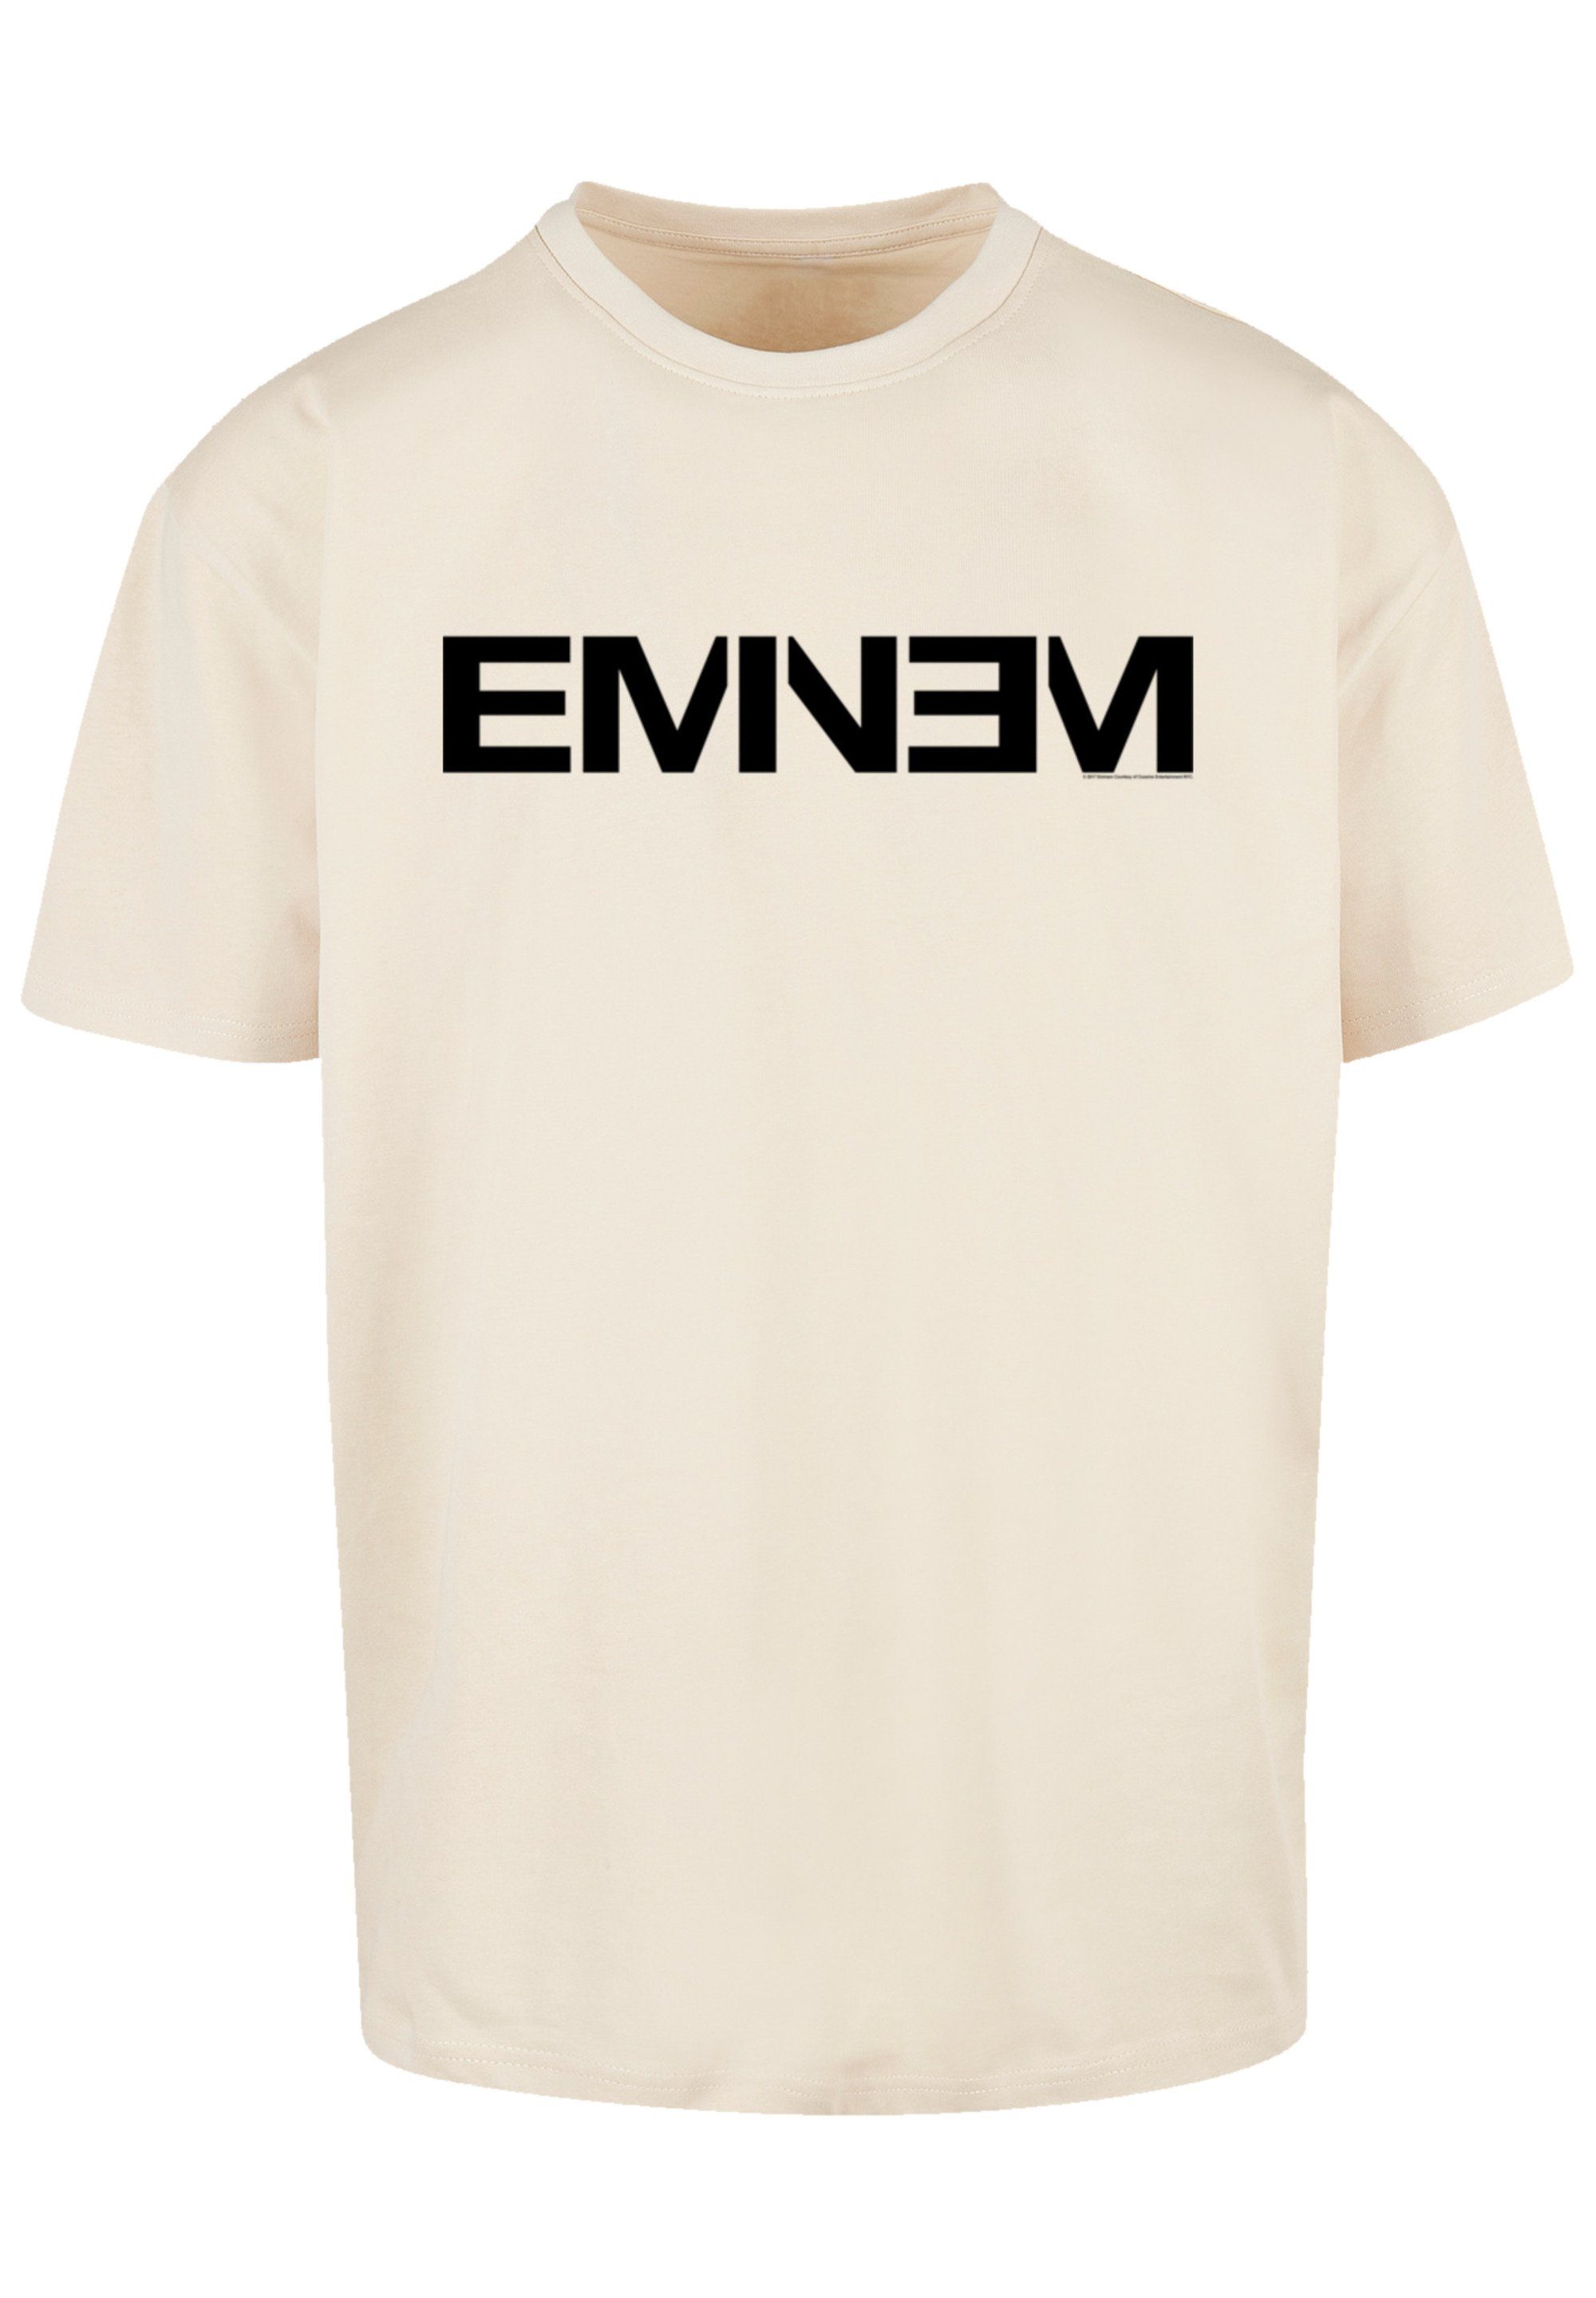 Qualität, T-Shirt Rap (240 Premium und Music dickes Hop Hip Eminem Baumwollgewebe F4NT4STIC gsm) weiches Musik,